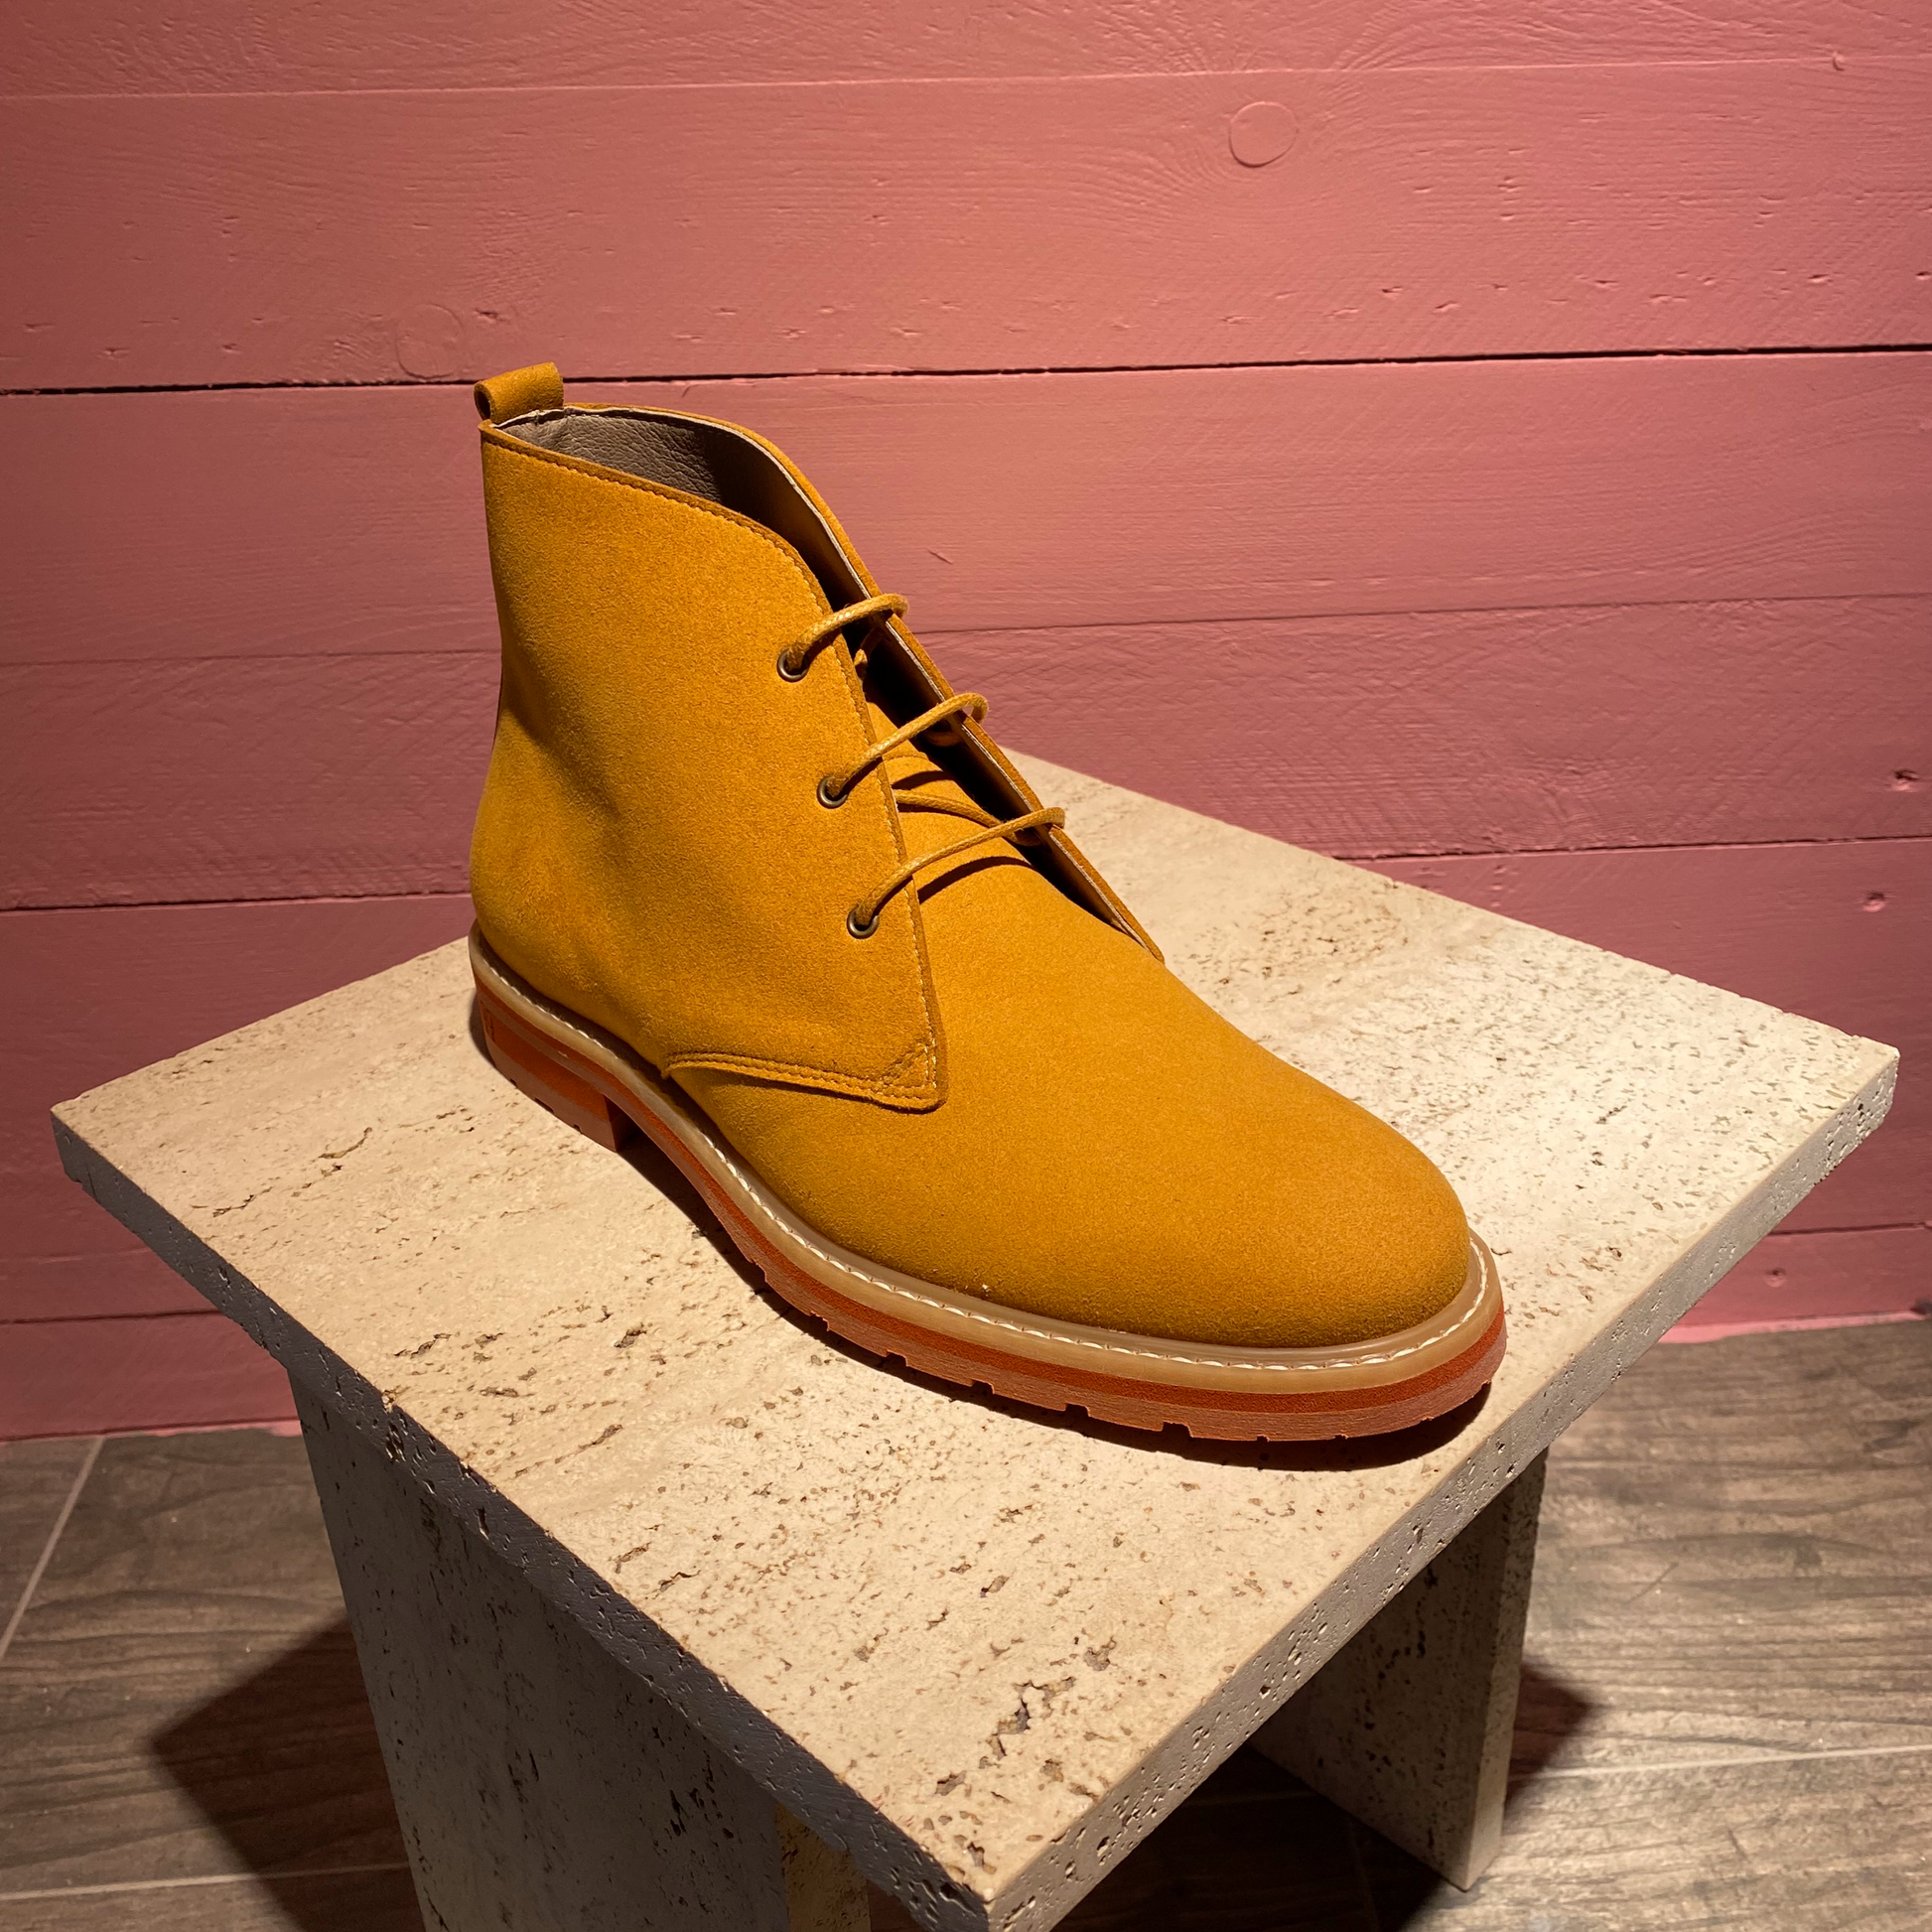 Desert boots en "suede" vegan. Ce design revisité par Good Guys Don't Wear Leather est iconique et sa semelle très légère cousue à la chaussure assure grande liberté de mouvement.